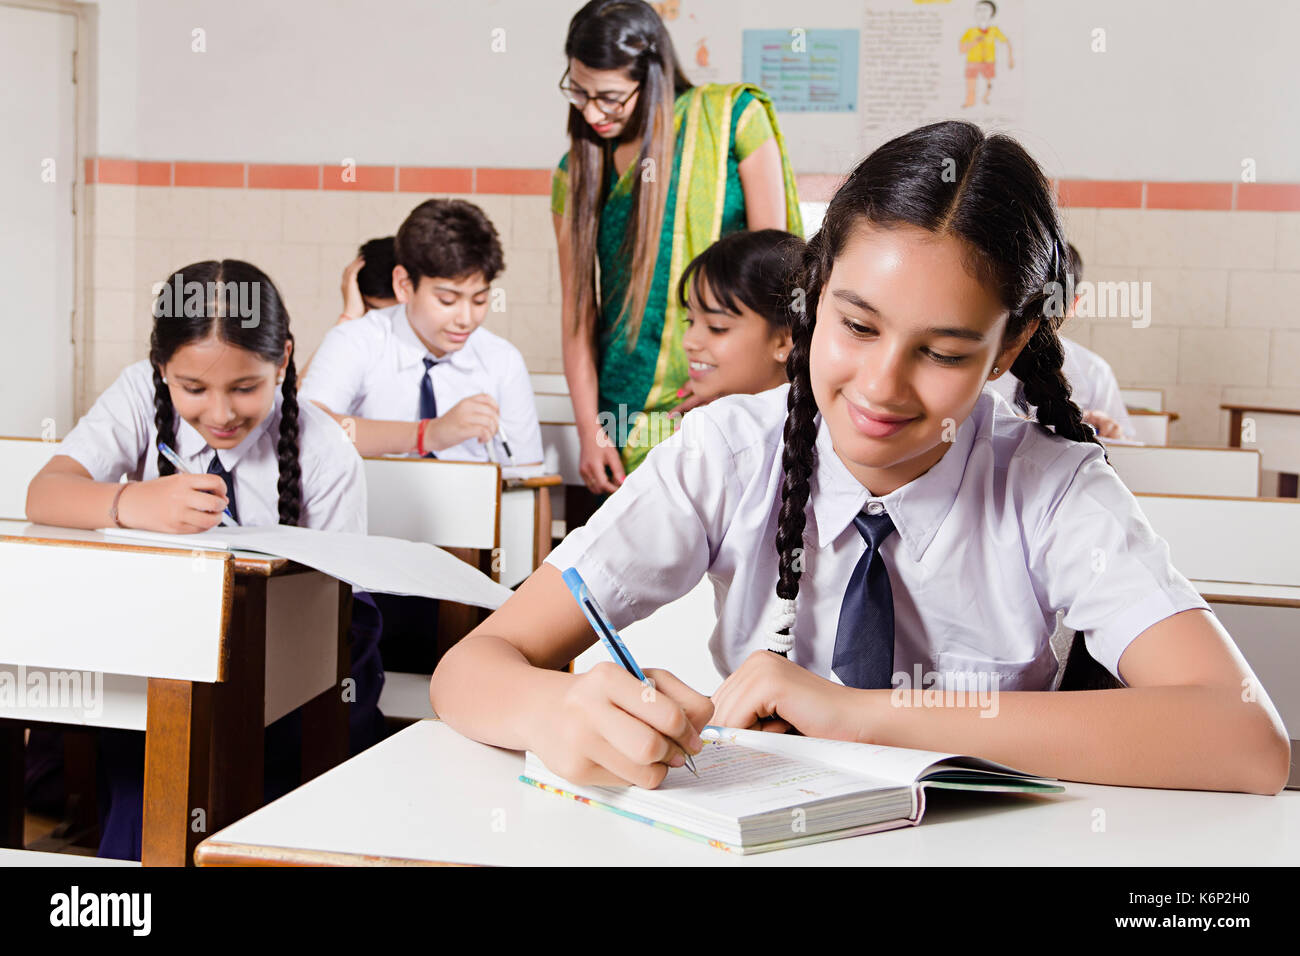 Indische Schule Mädchen Schüler schreiben Hinweis Buch studieren in der Klasse Stockfoto